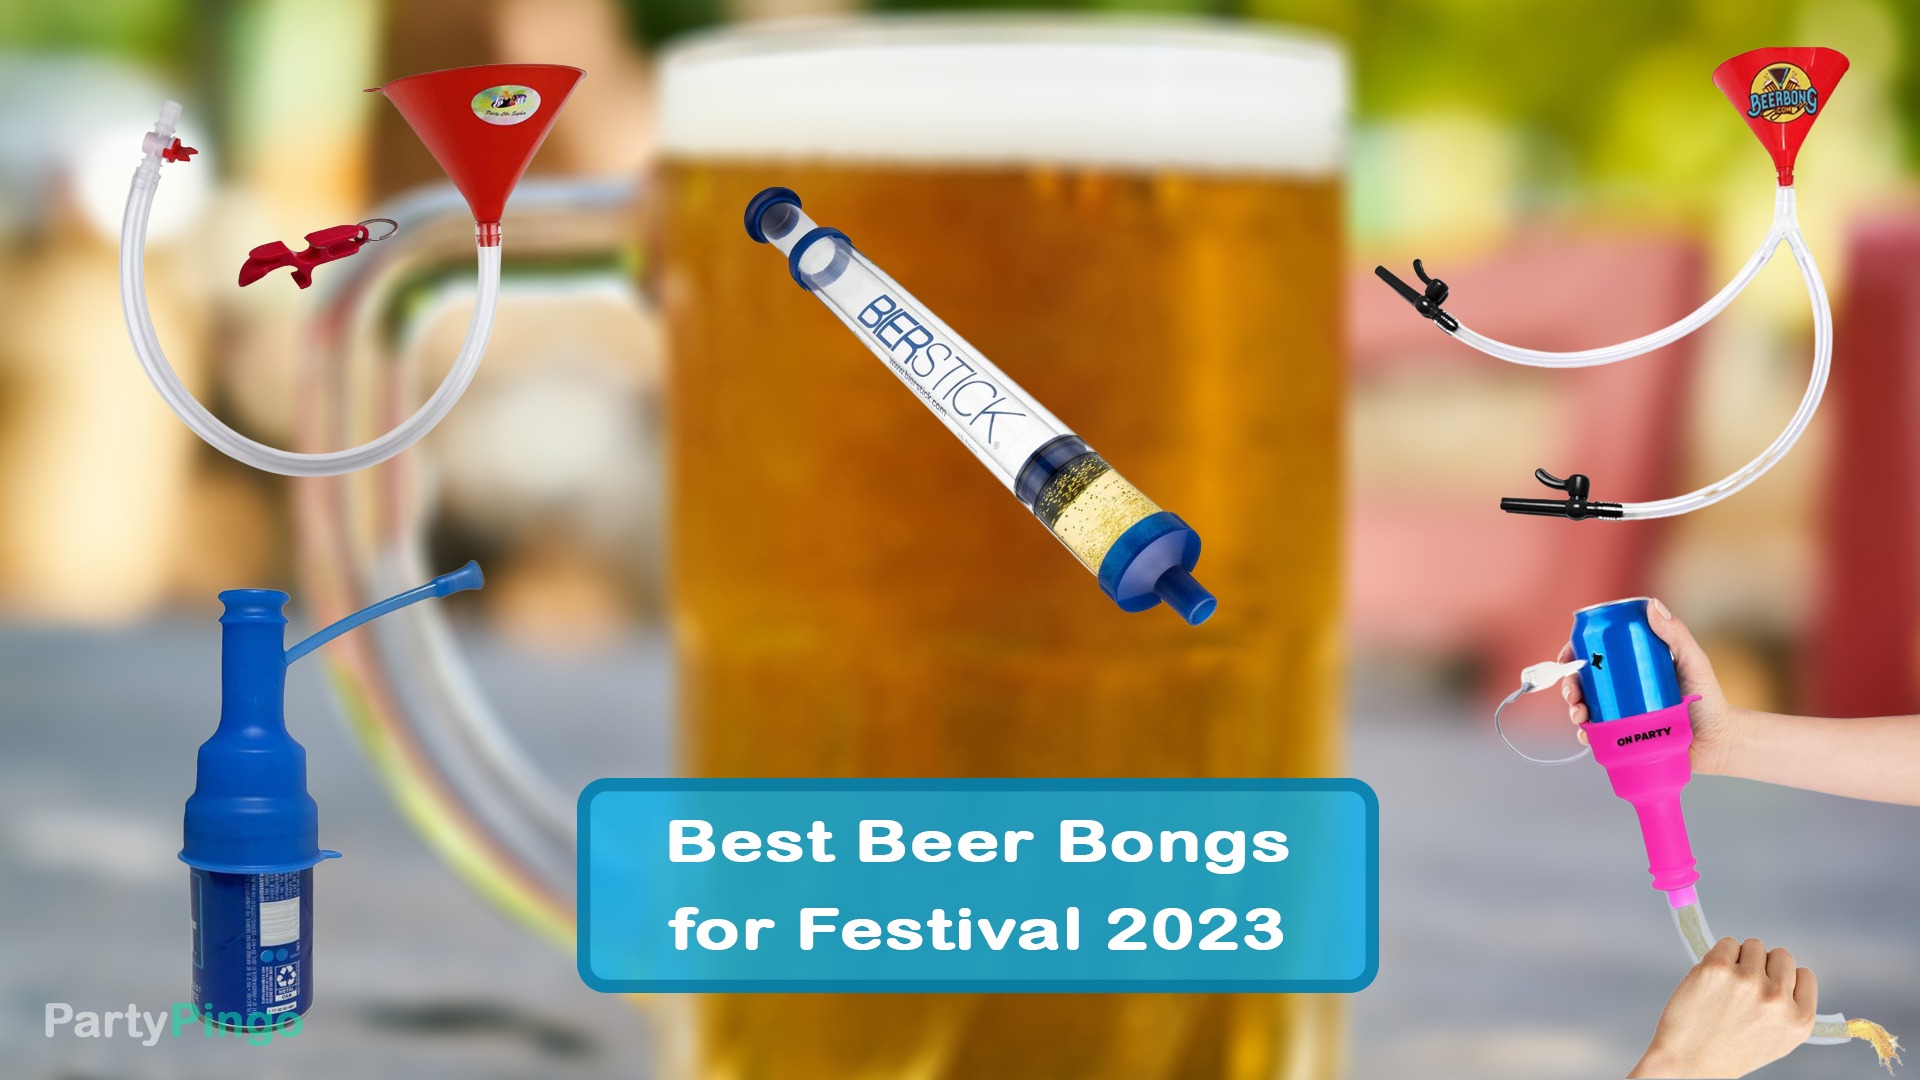 Best Beer Bongs for Festival 2023